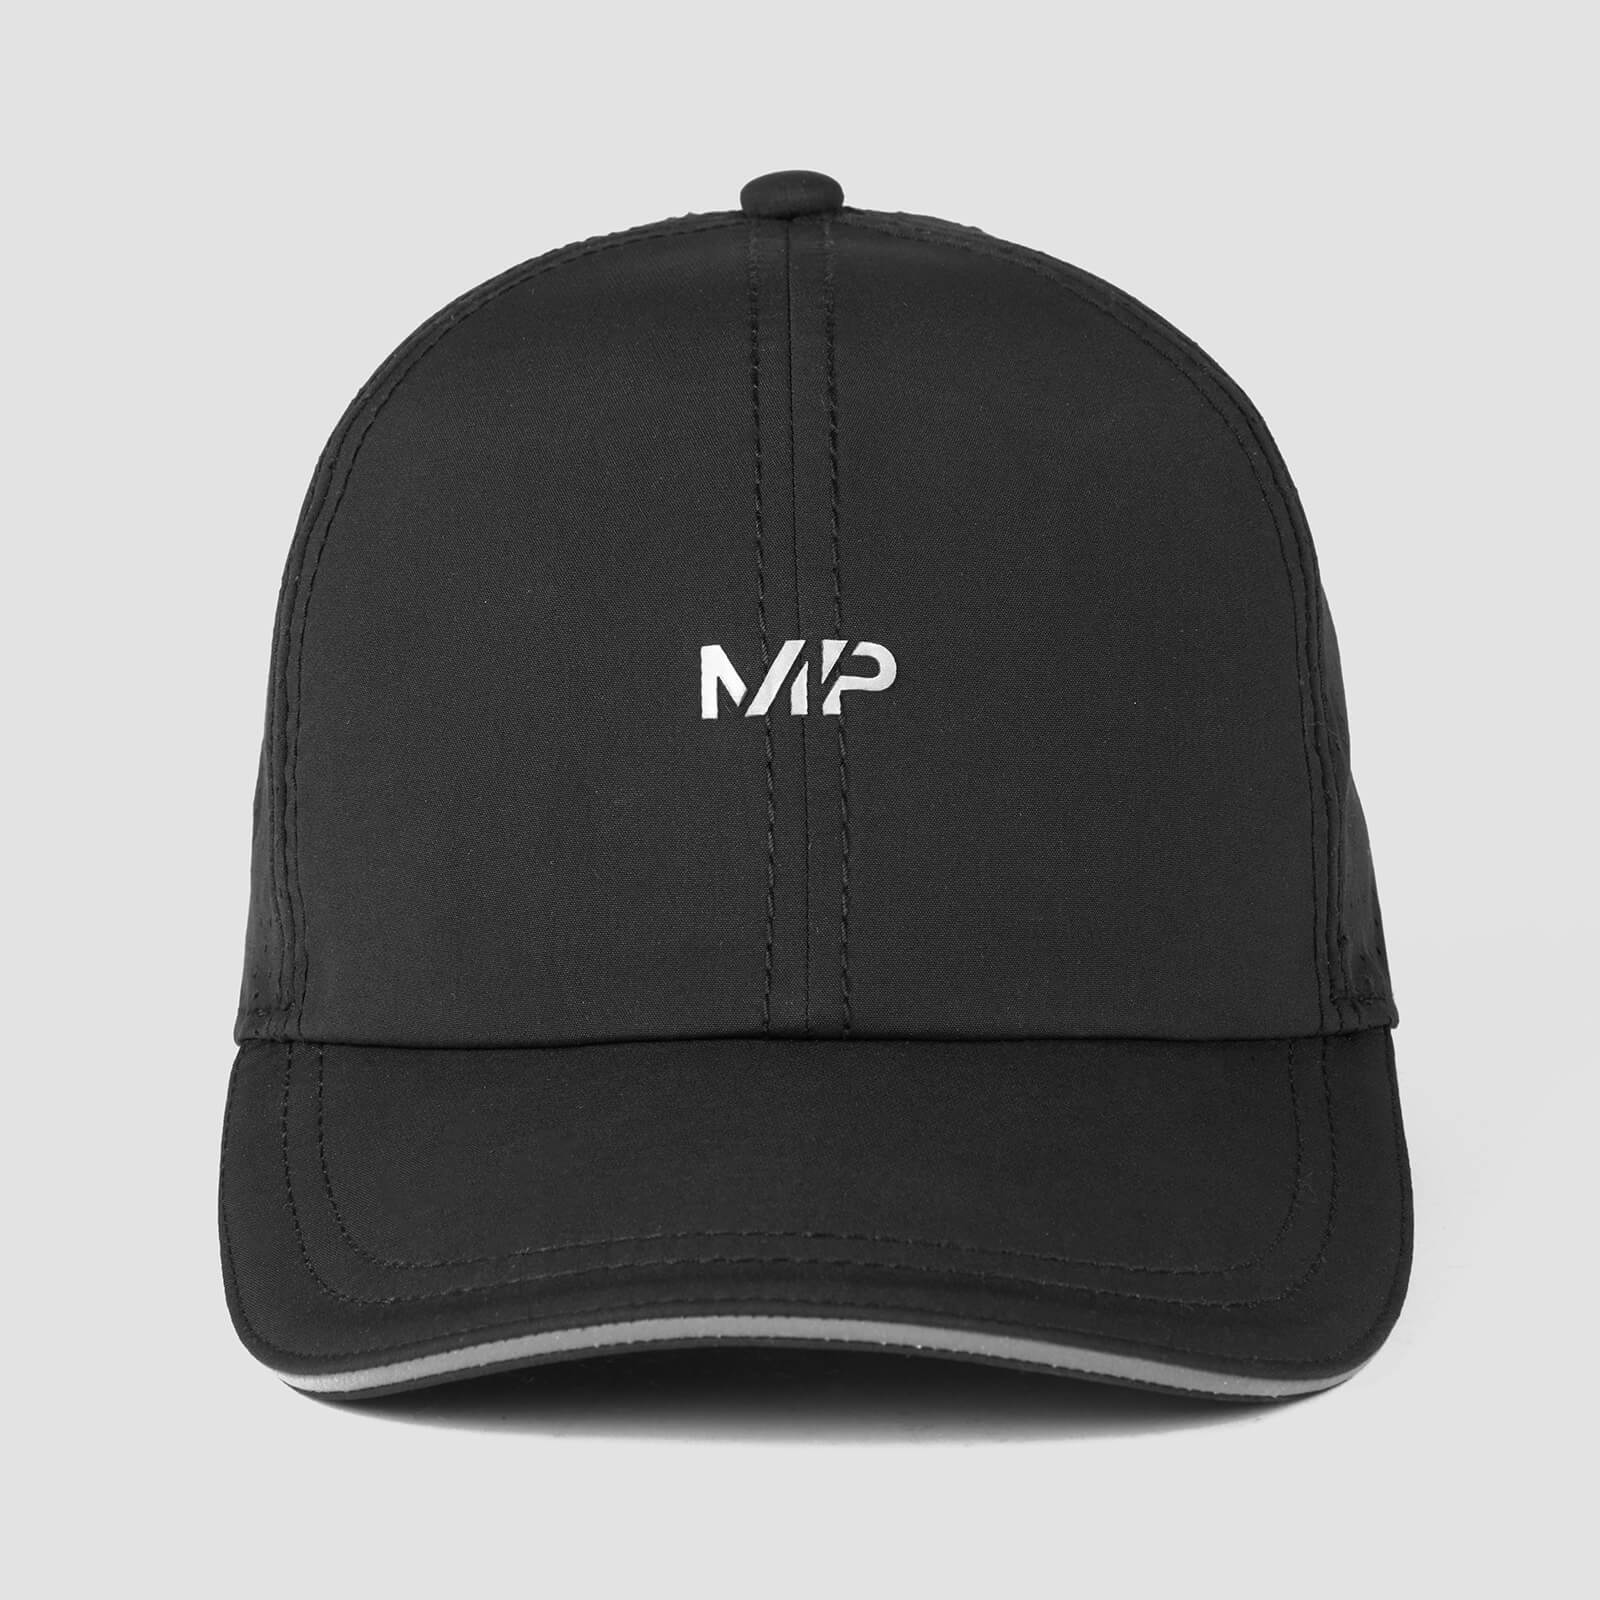 MP หมวกแก๊ปออกกำลังกาย ระบายอากาศ - สีดำ/สะท้อนแสง